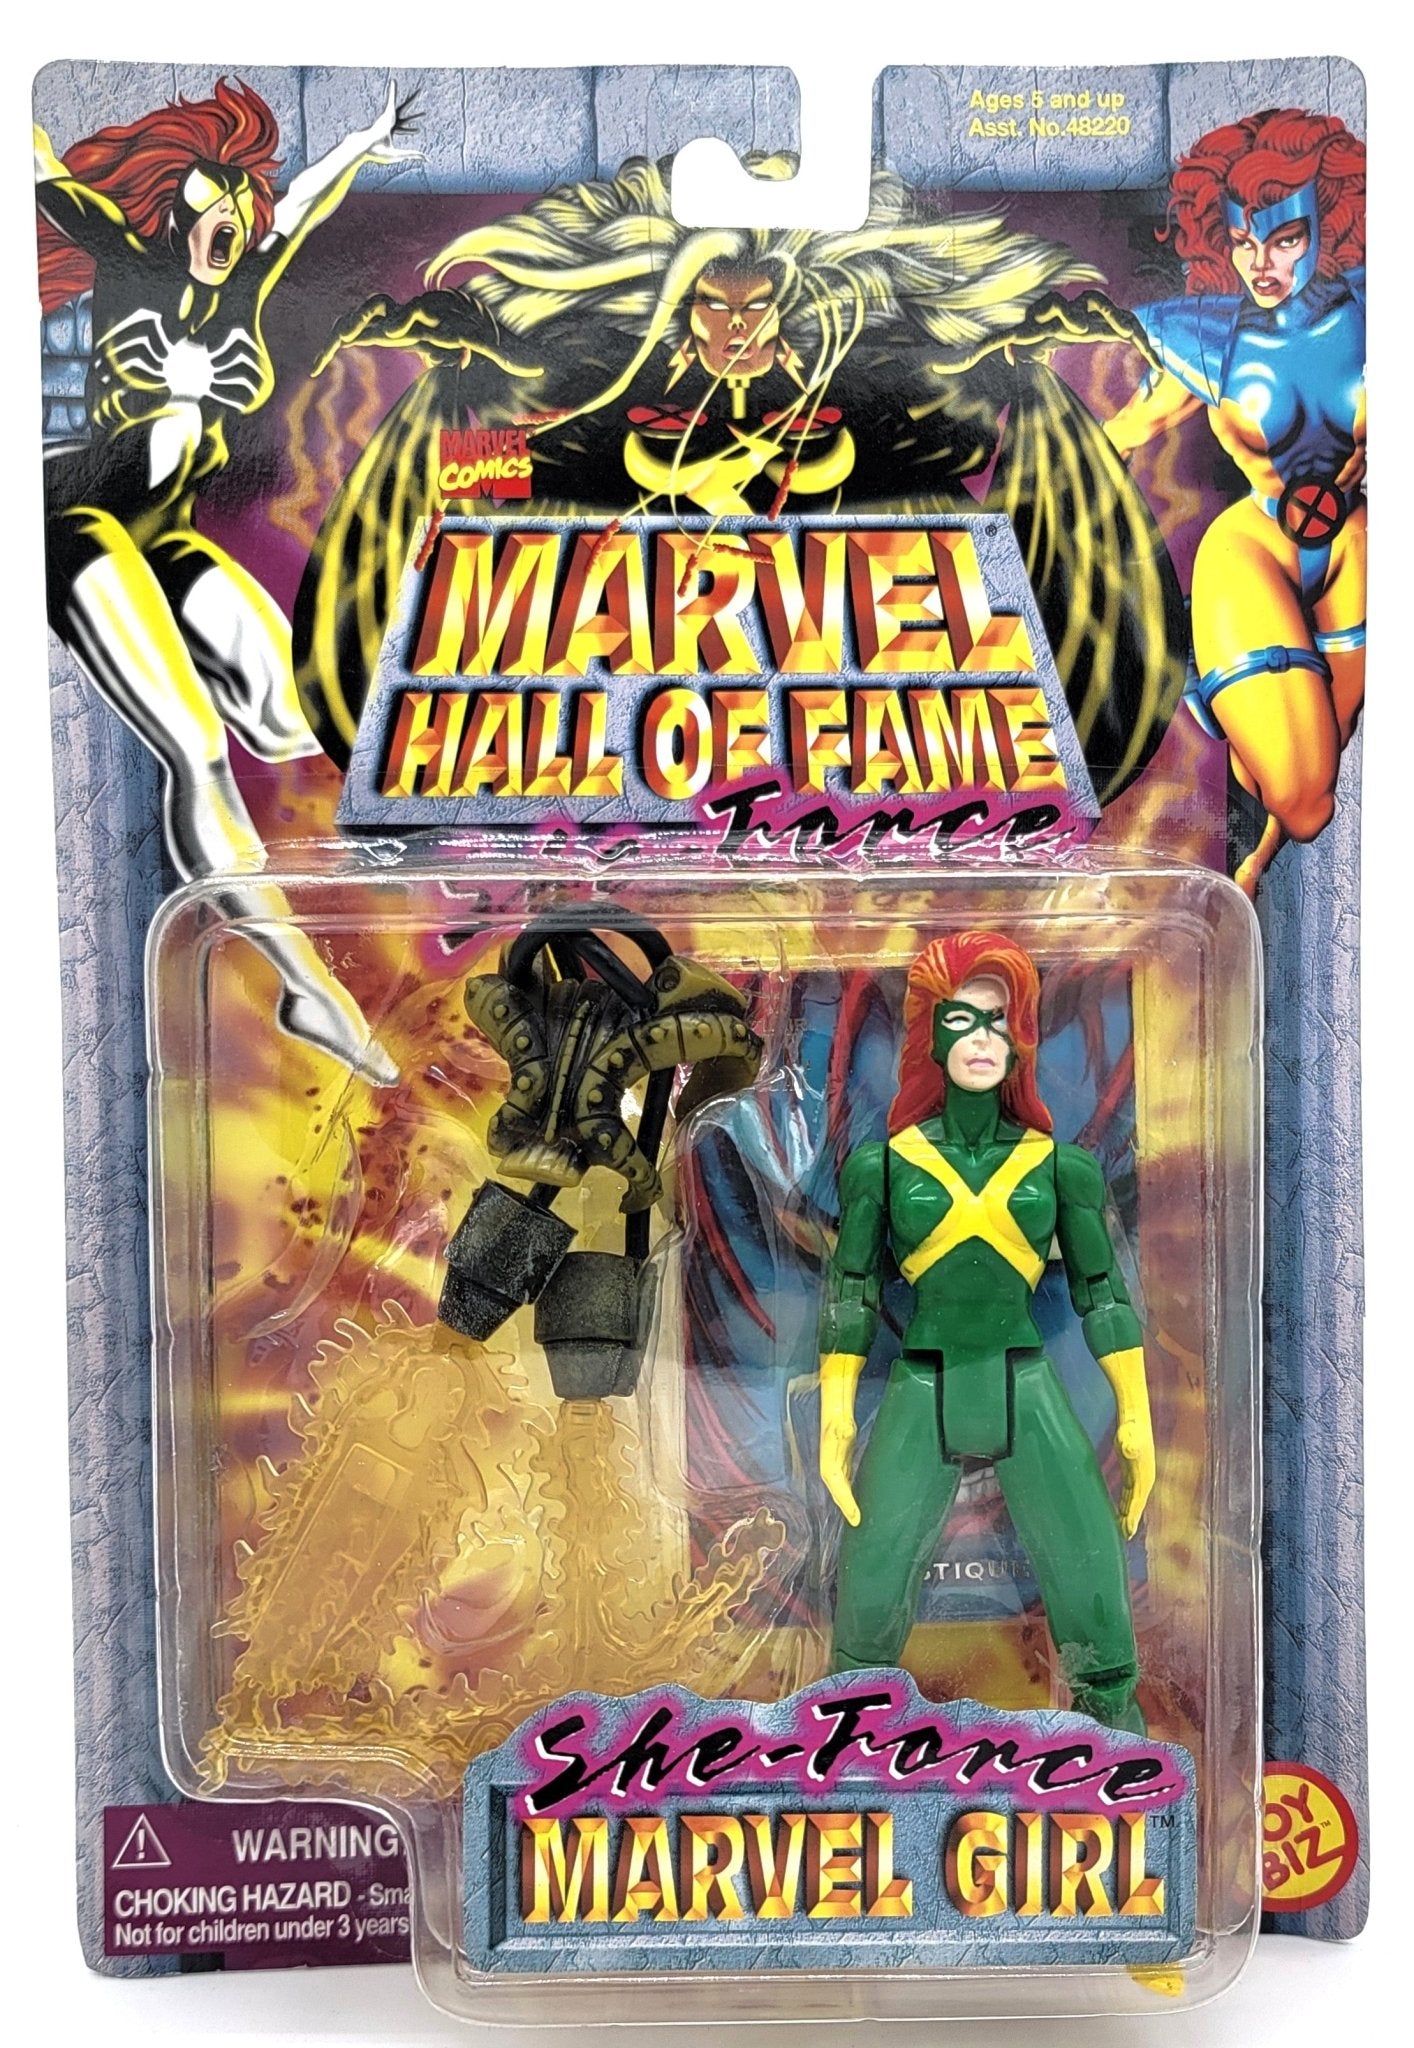 Toy Biz - Toy Biz | Marvel Hall of Fame - She Force - Marvel Girl 1997 | DVD | Vintage Marvel Action Figure - Action Figures - Steady Bunny Shop